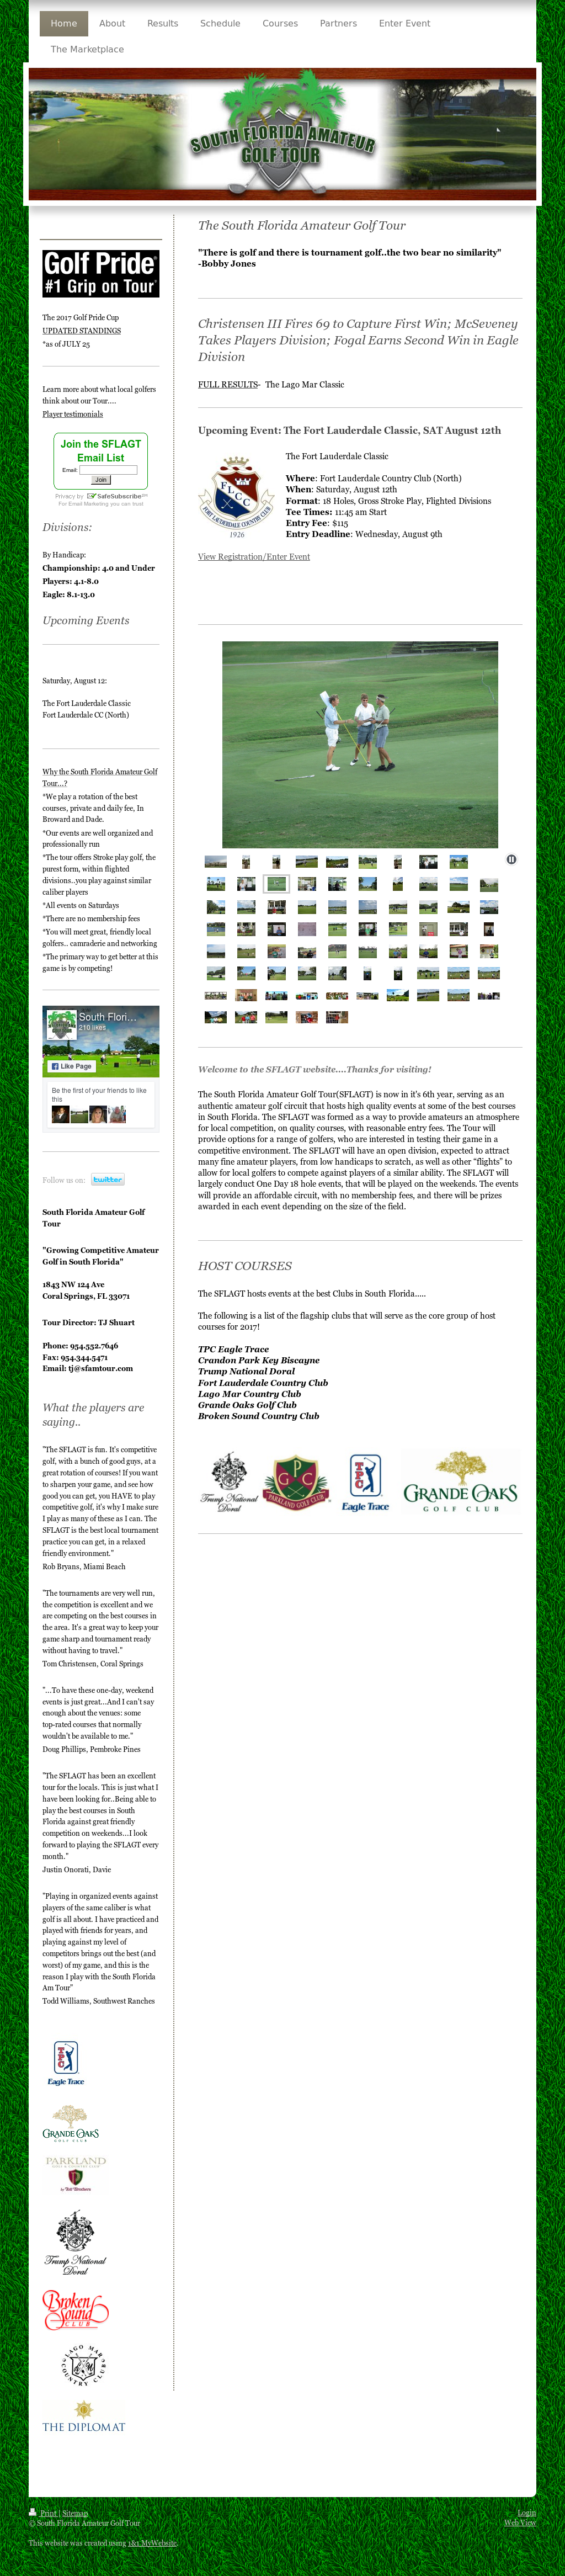 best of Amateur tours Florida golf